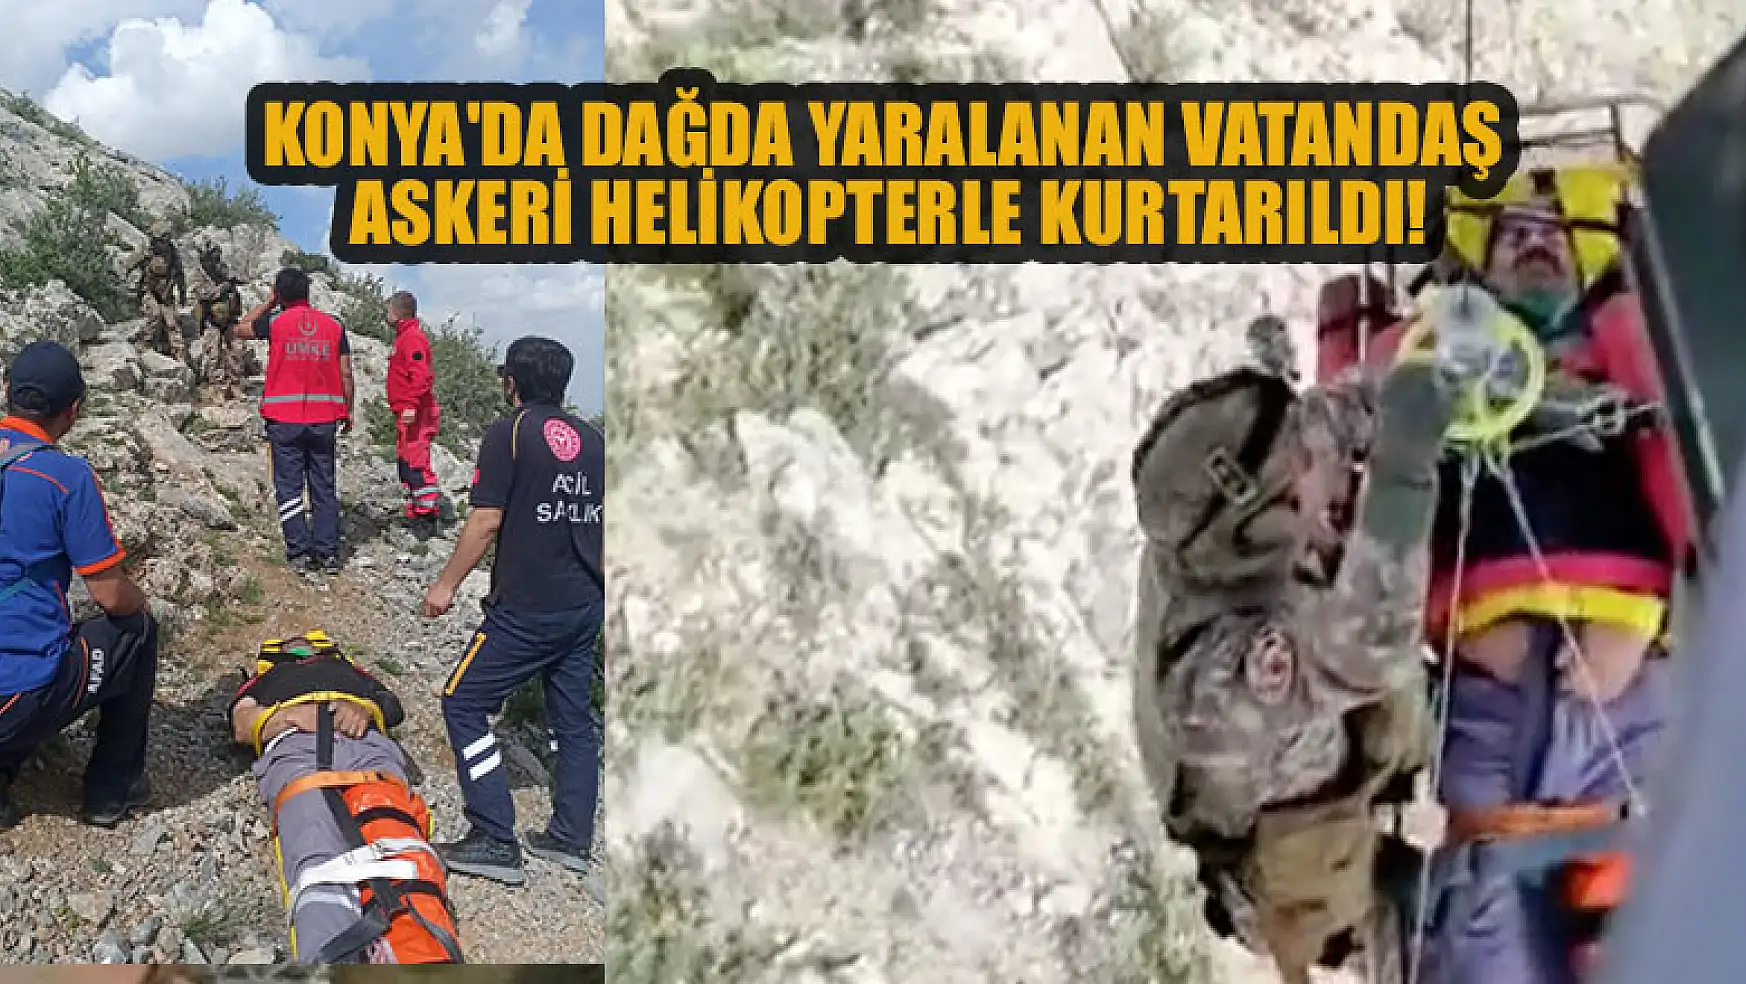 Konya'da engebeli arazide düşerek yaralanan vatandaş askeri helikopterle kurtarıldı